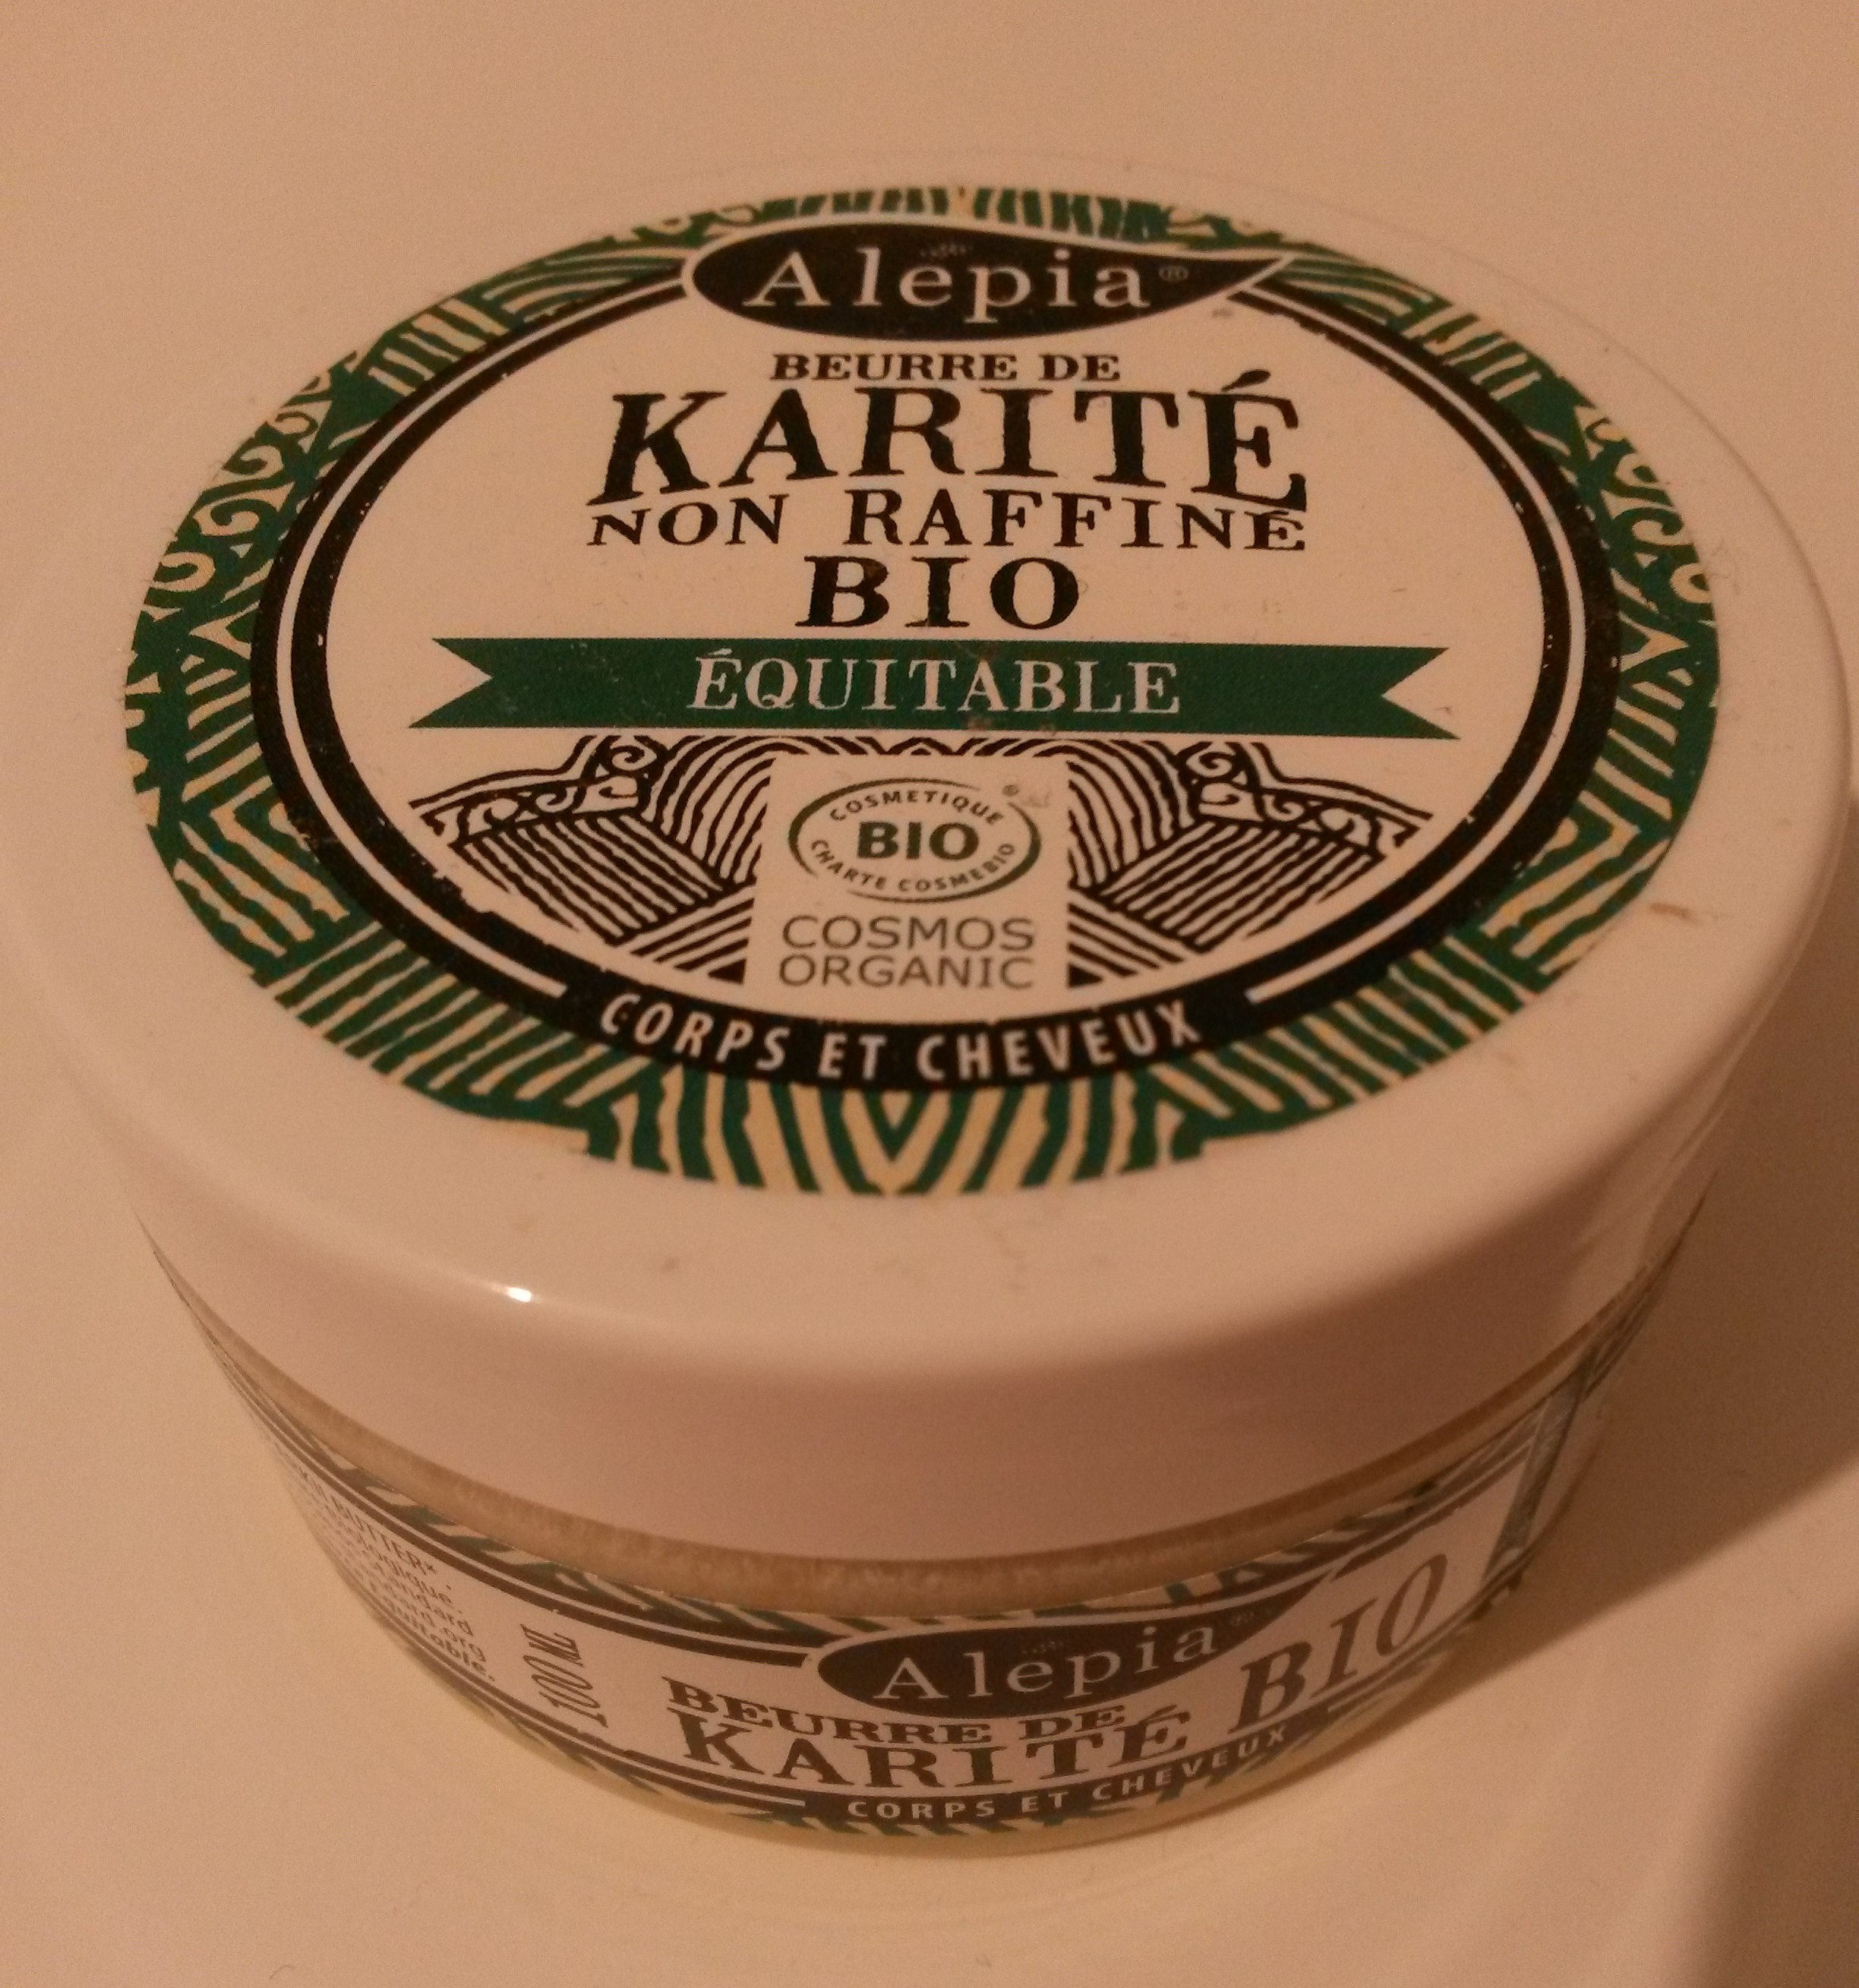 Beurre de karité - non raffiné, bio, équitable - Produit - fr